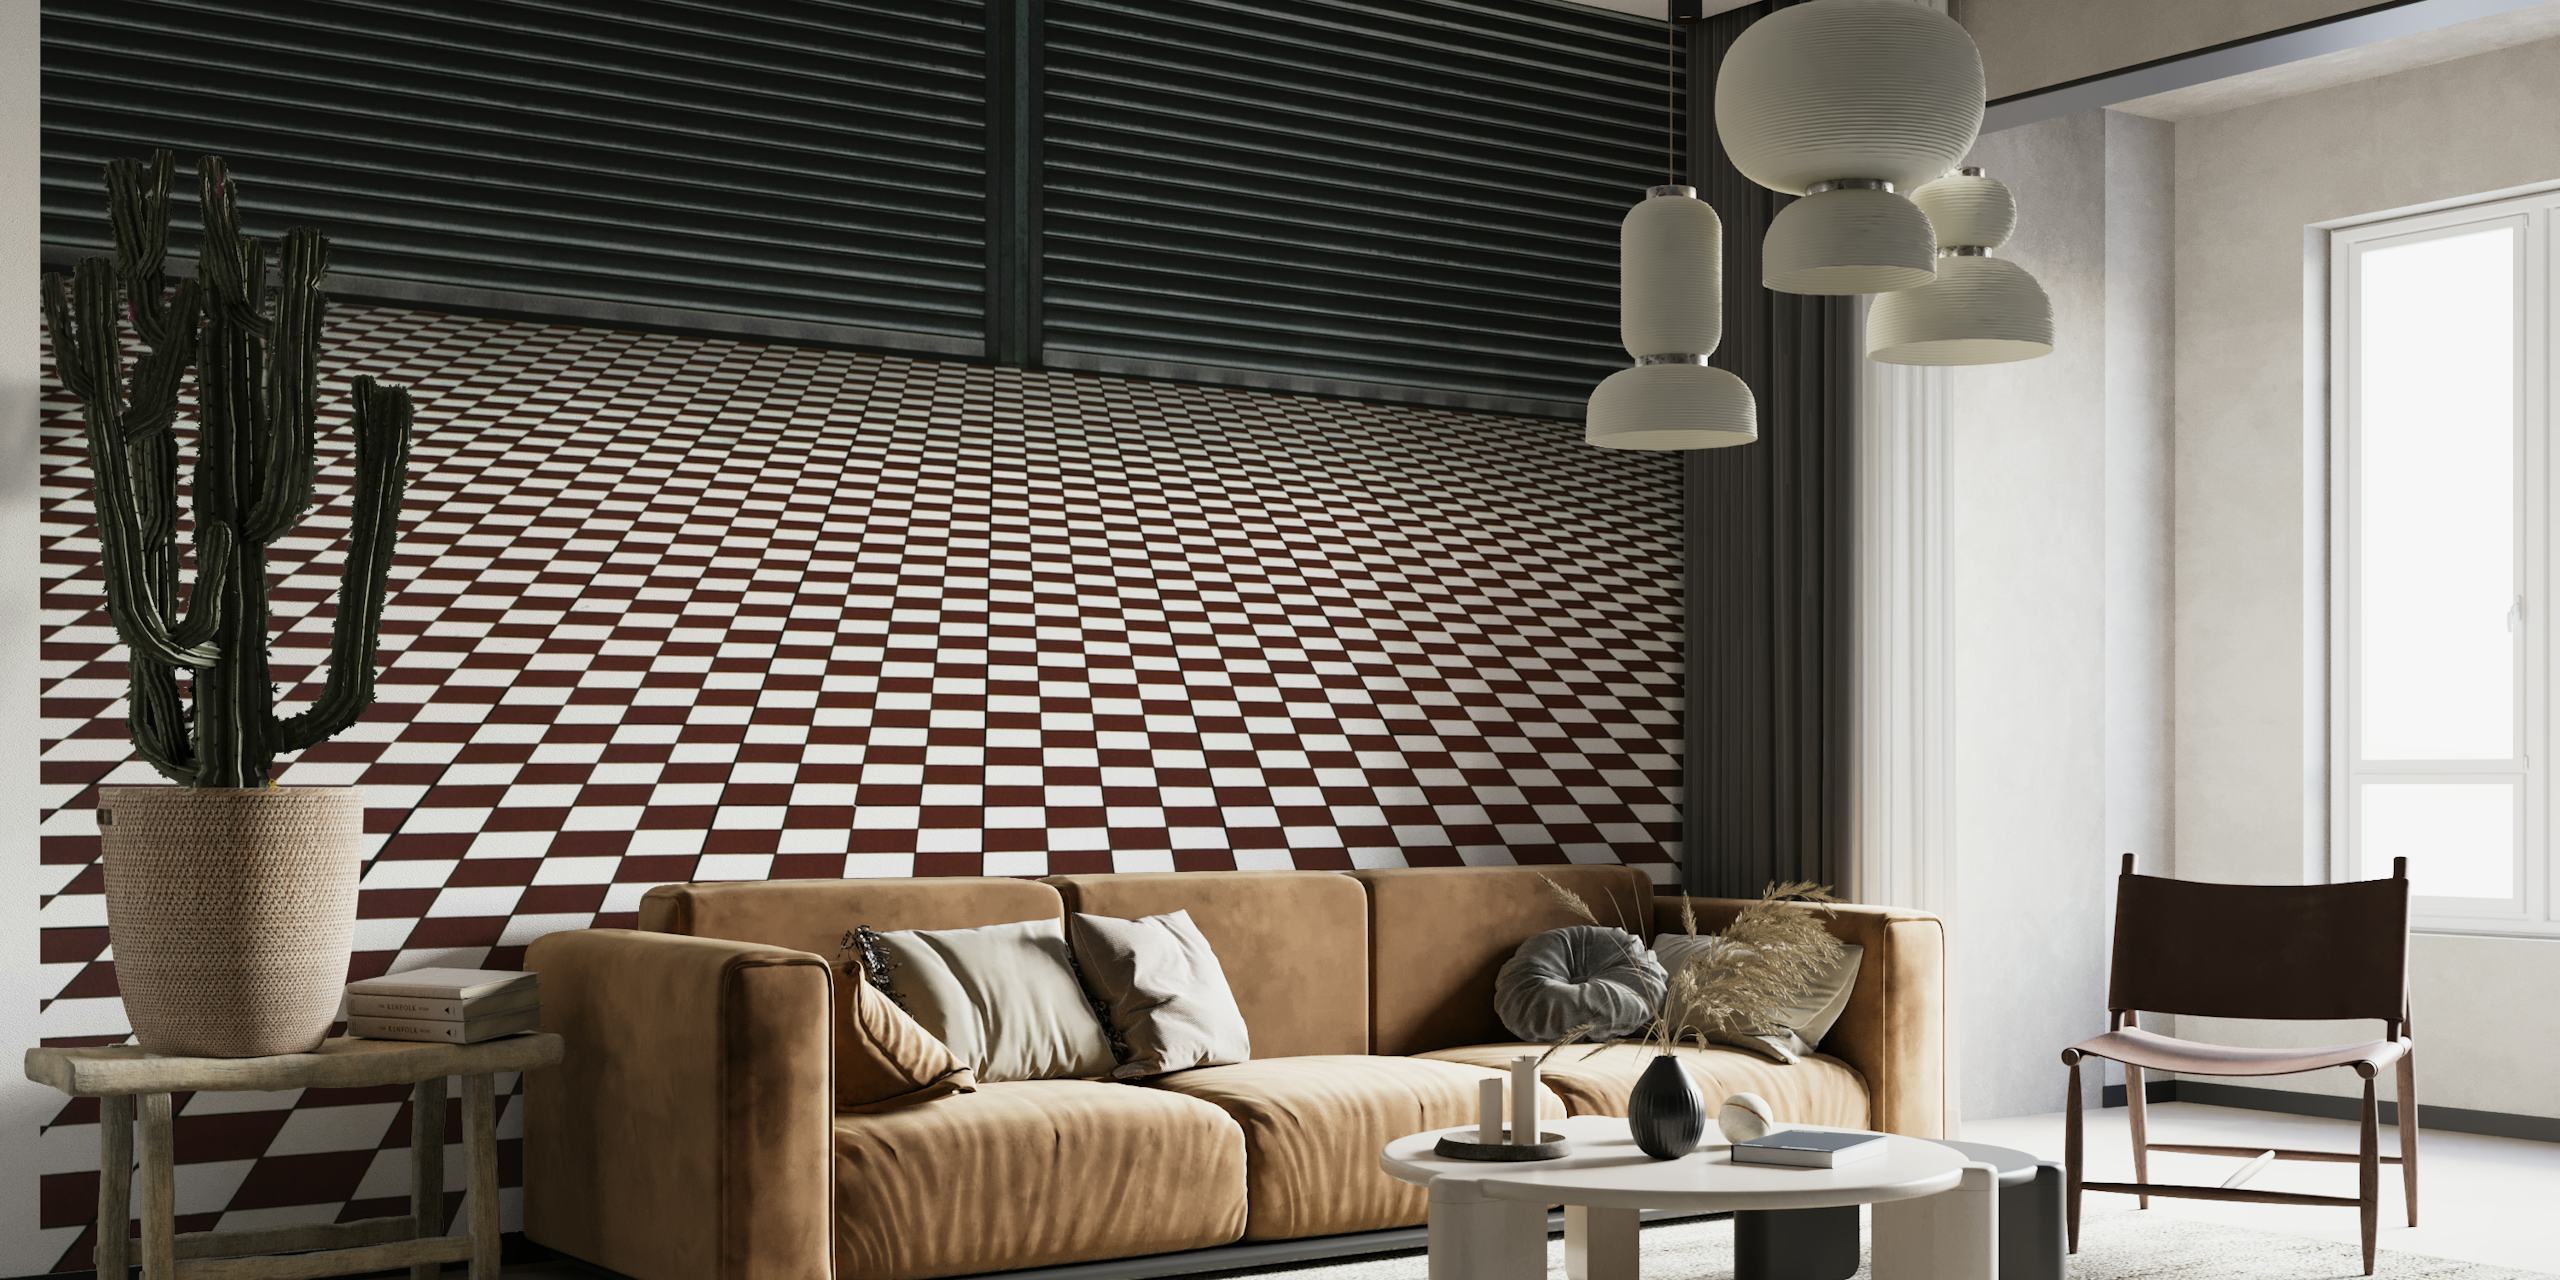 The hypnotic floor wallpaper